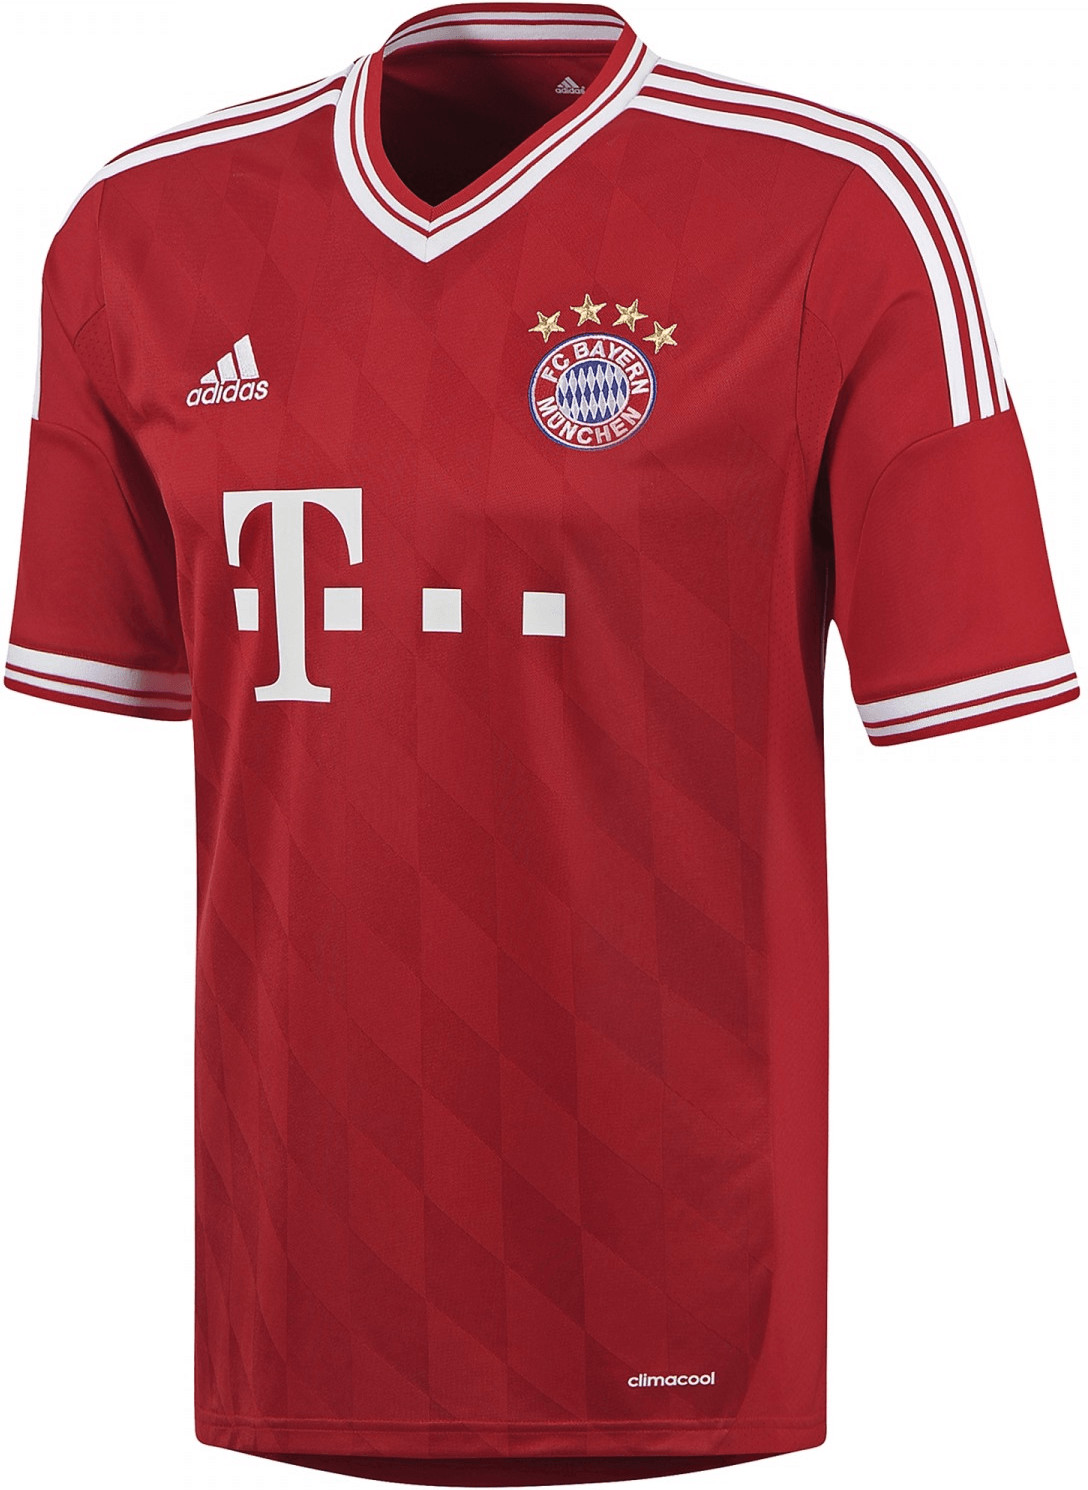 Adidas FC Bayern München Home Trikot 2013/2014